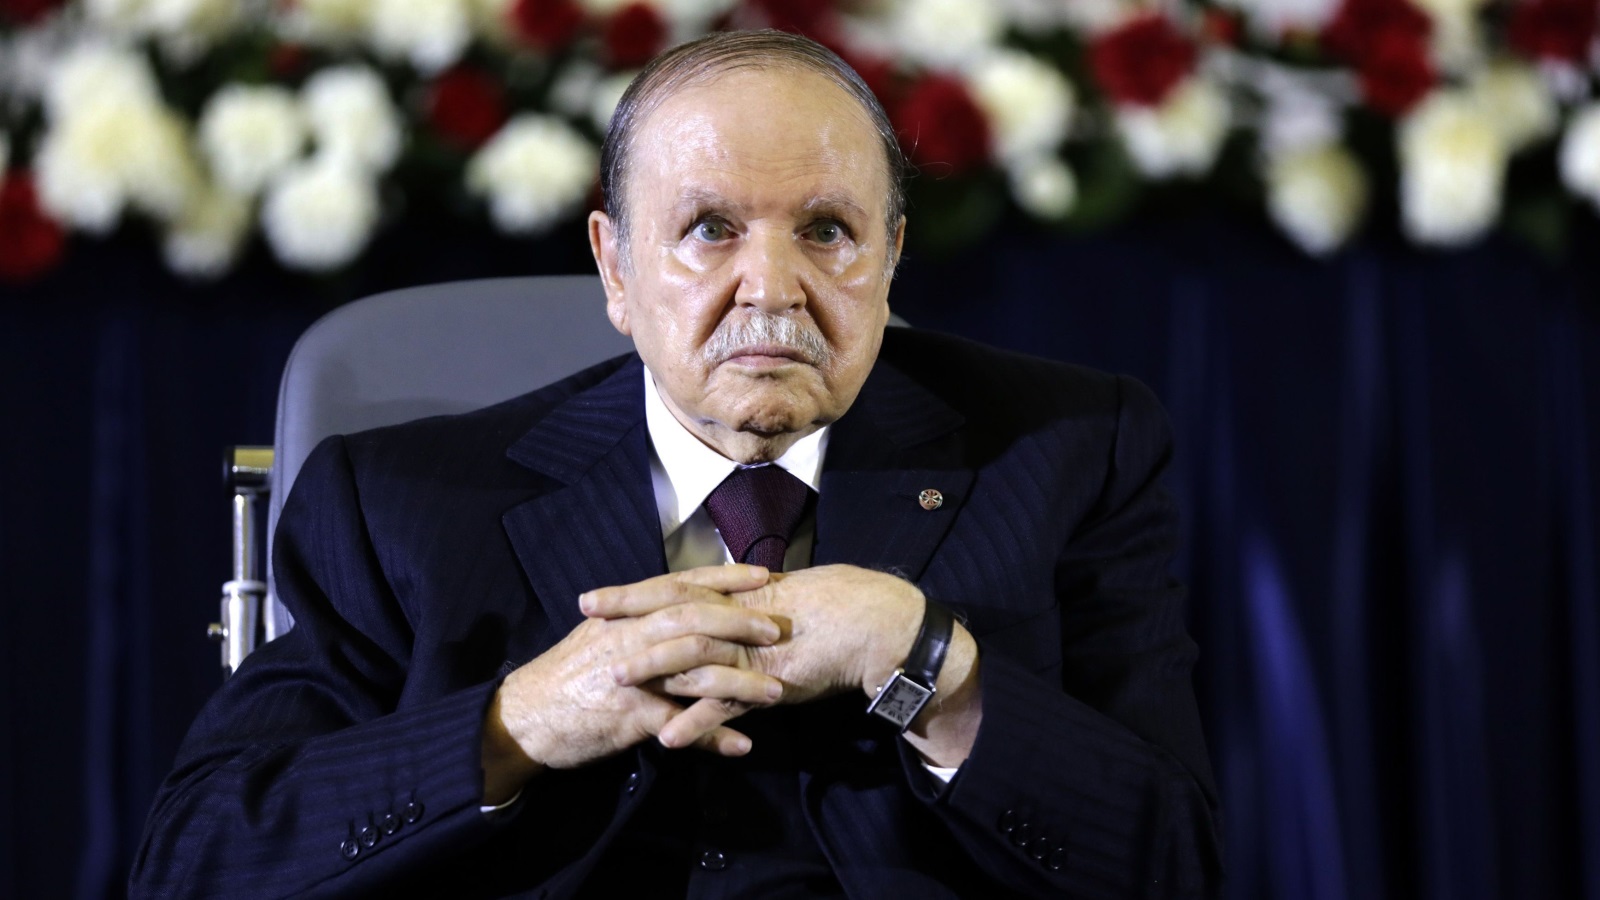 عام 1999 قام الرئيس الجزائري عبدالعزير بوتفليقة ومن خلال عملية استفتاء شعبي؛ بإقرار 